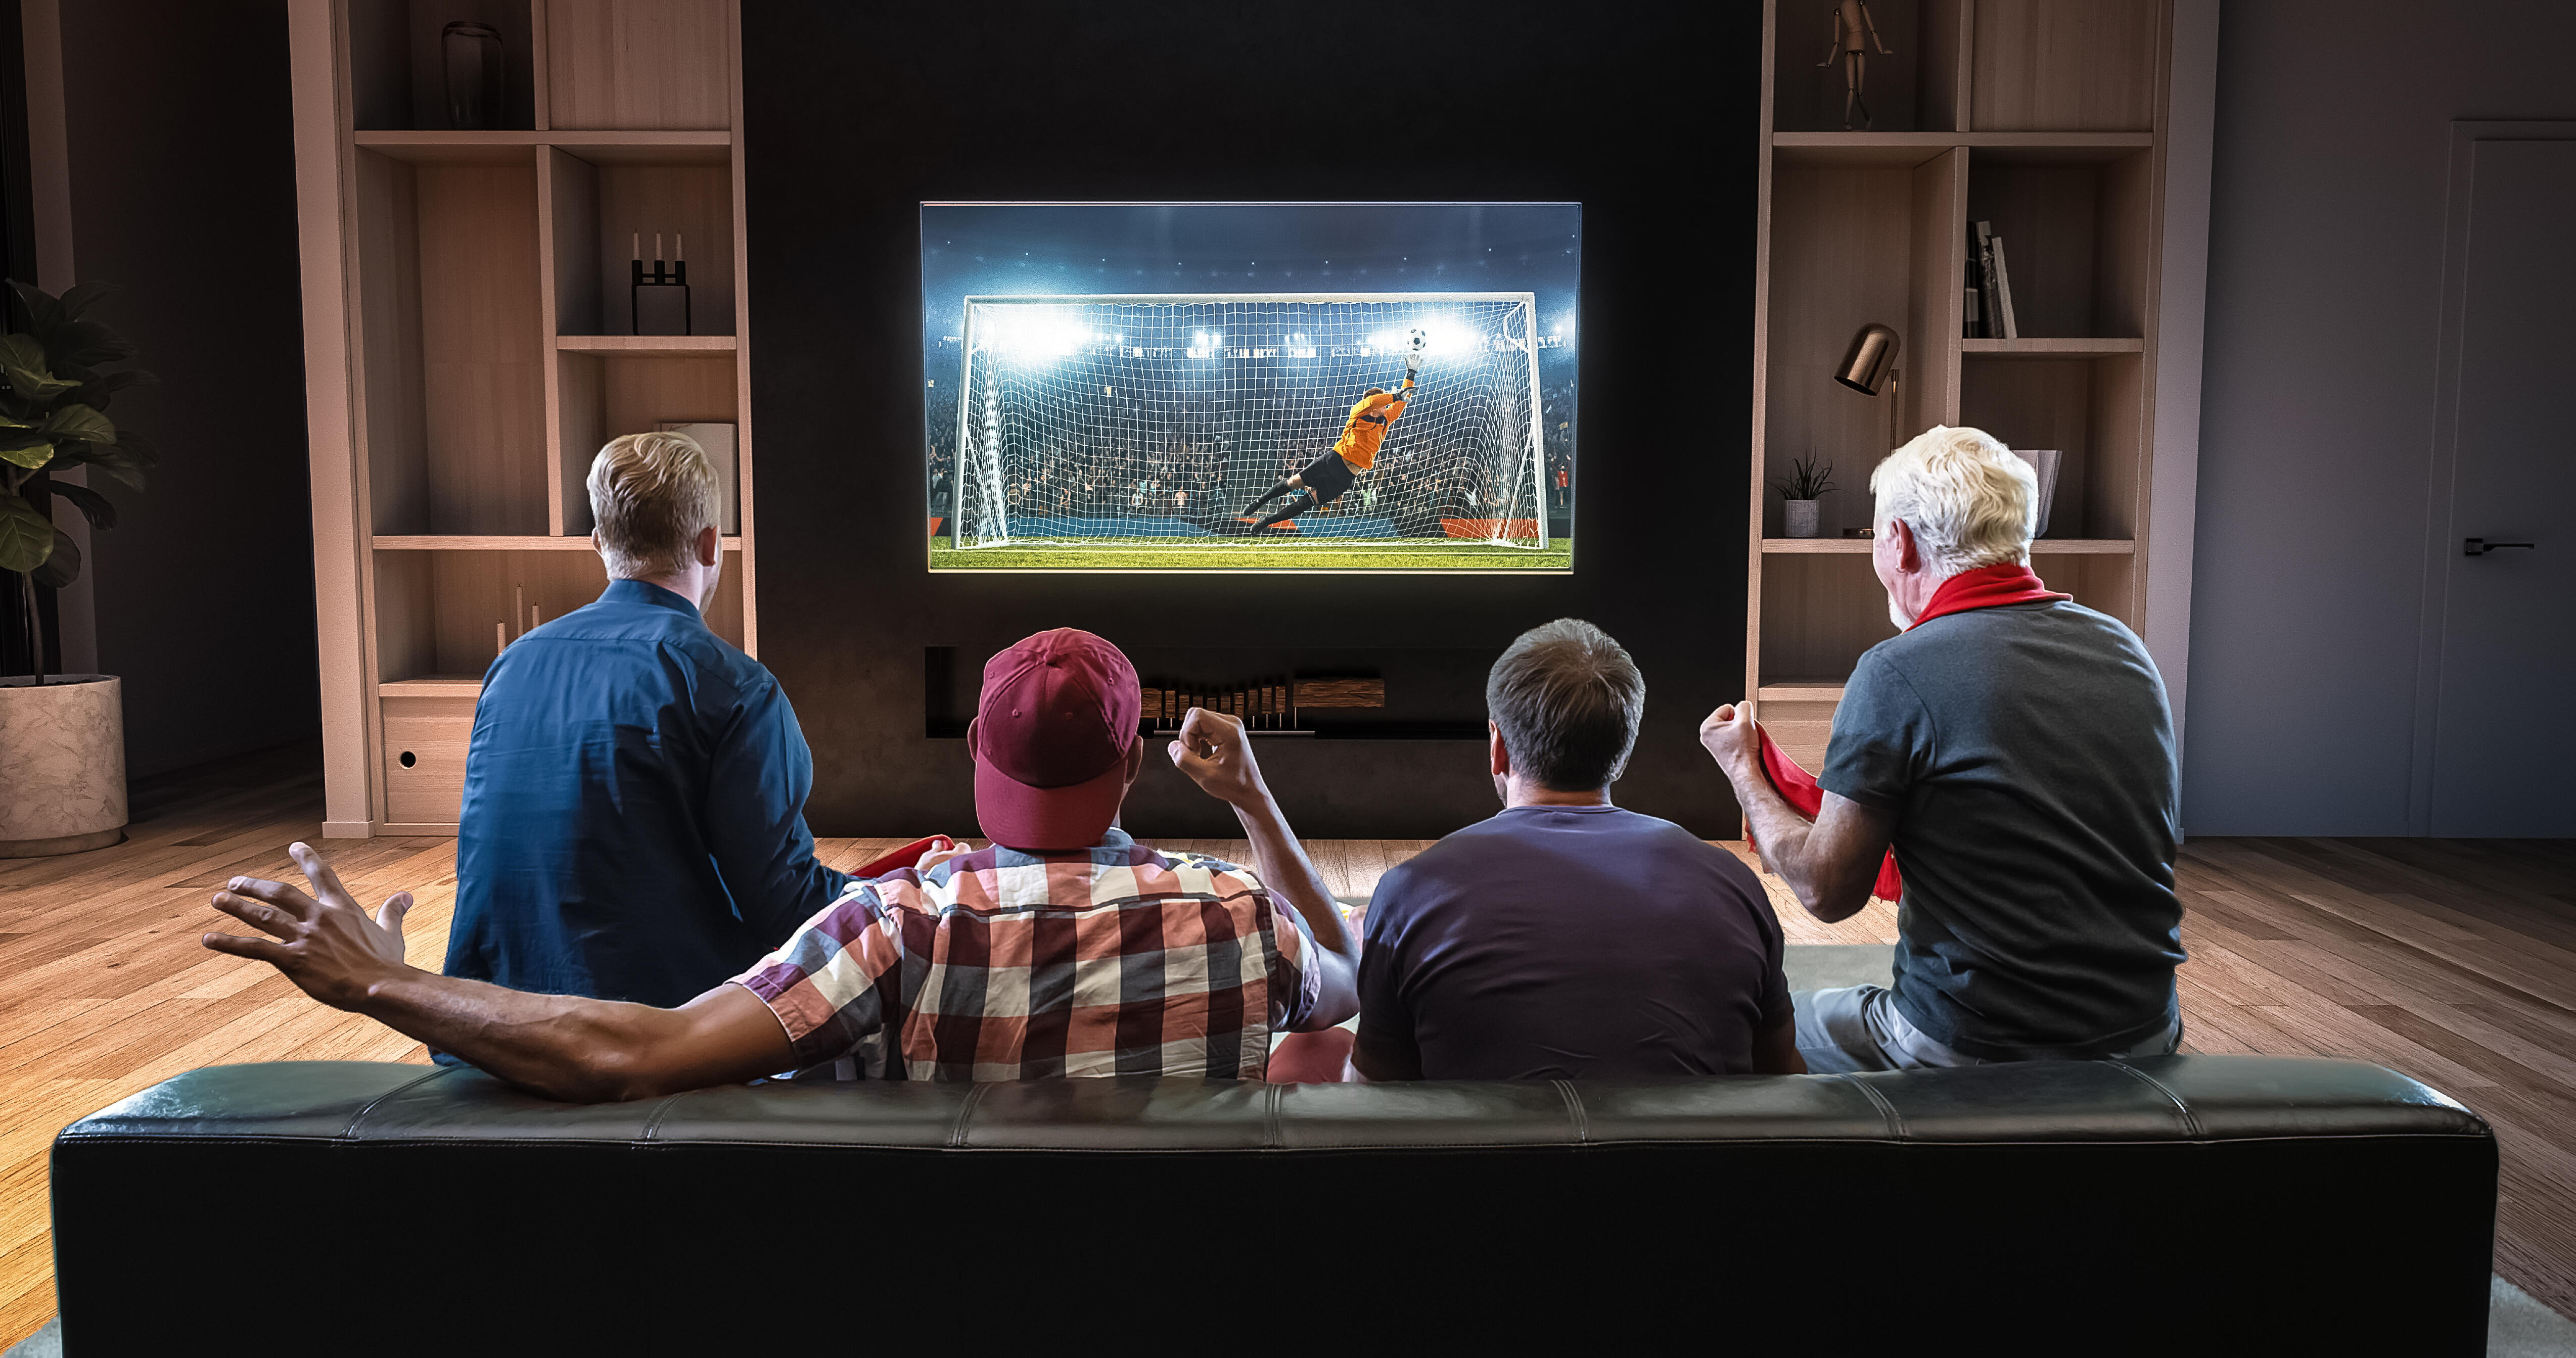 Звезды смотрят футбол. Футбол по телевизору. Болельщики у телевизора. Человек перед телевизором. Люди смотрят футбол по телевизору.